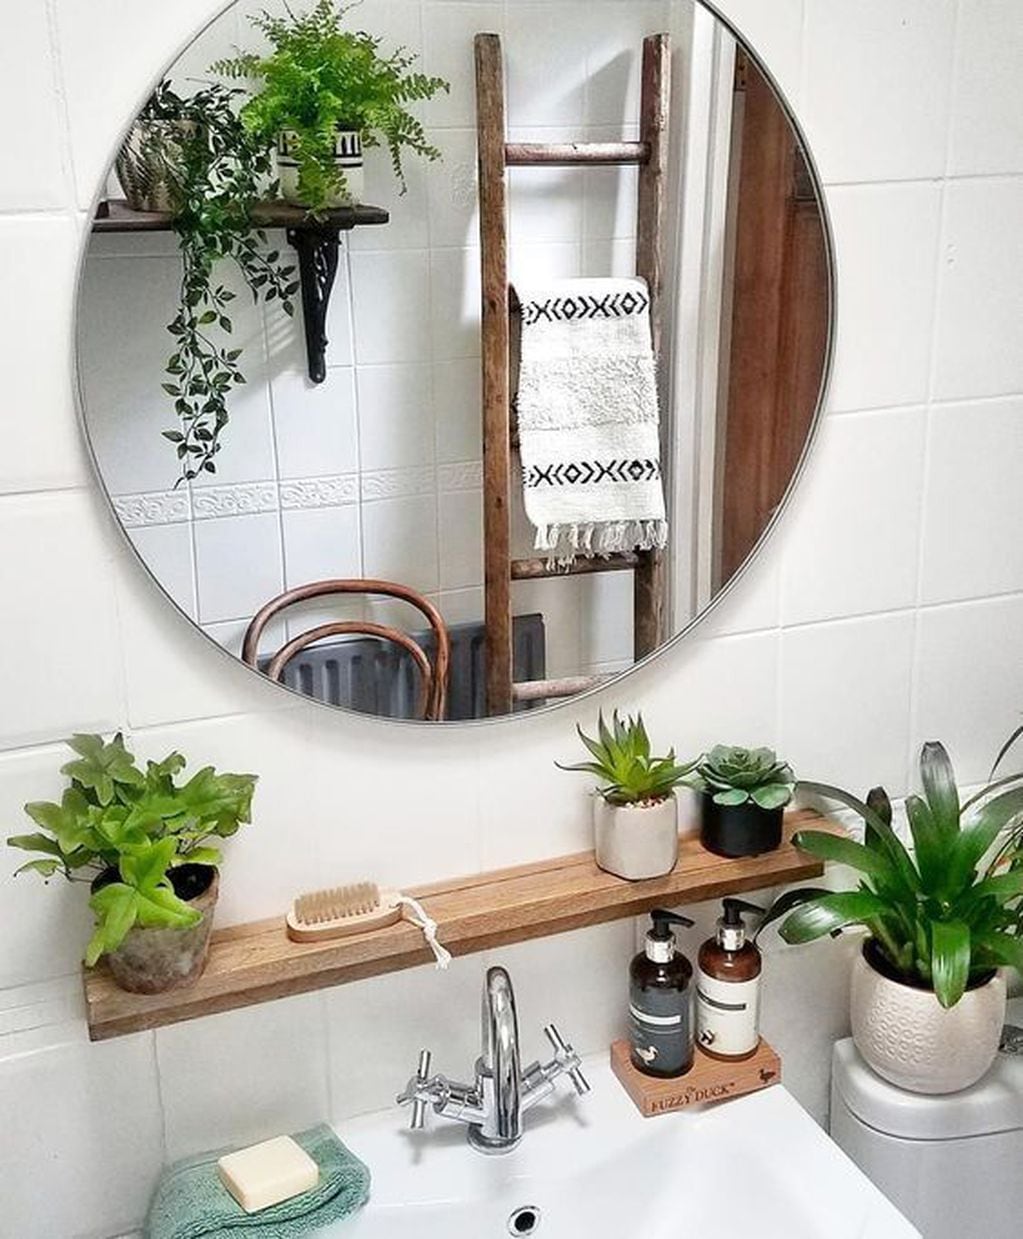 Elementos decorativos para transformar tu baño: macetas con plantas